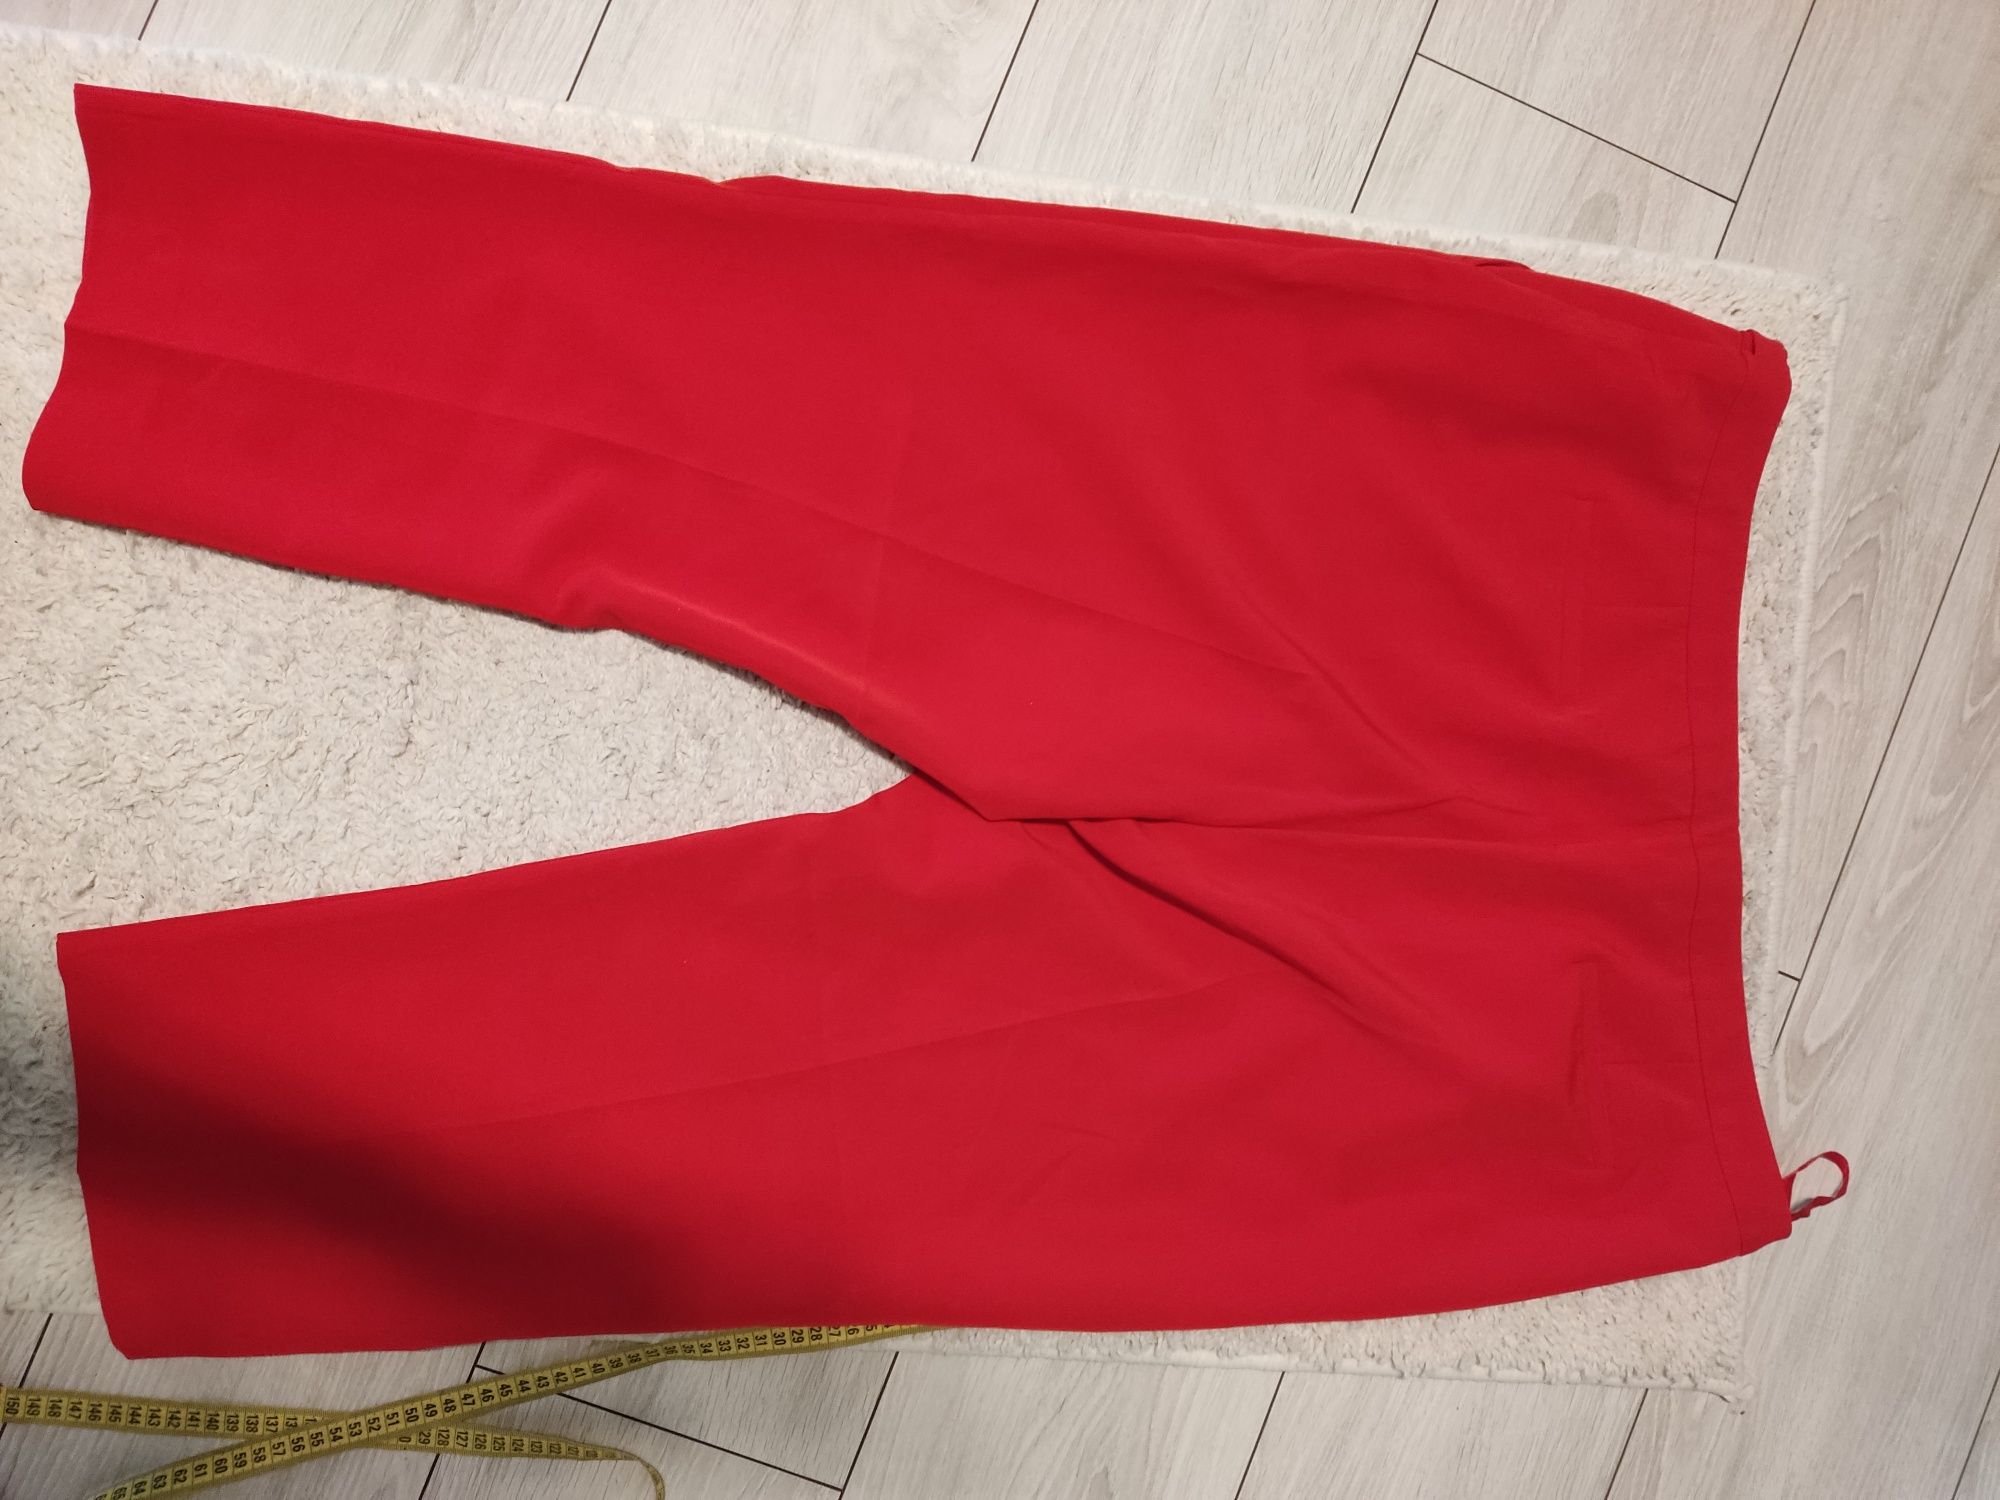 Czerwone spodnie eleganckie